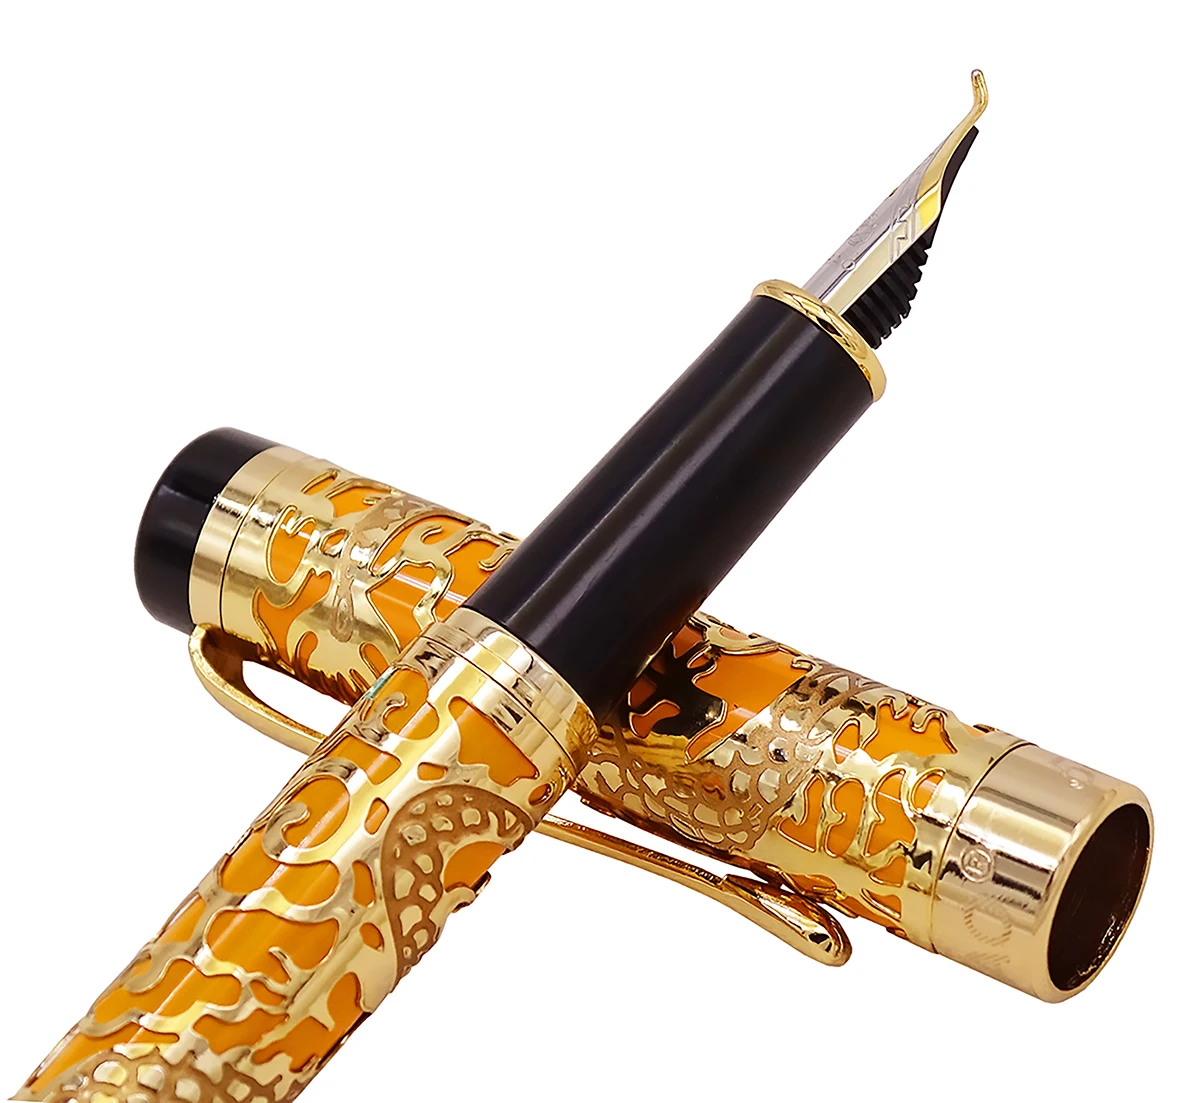 Jinhao 5000 Винтаж Роскошный Металлический каллиграфическая самопишущая ручка изогнутое перо Красивая Дракон текстура резьба, оранжевый и